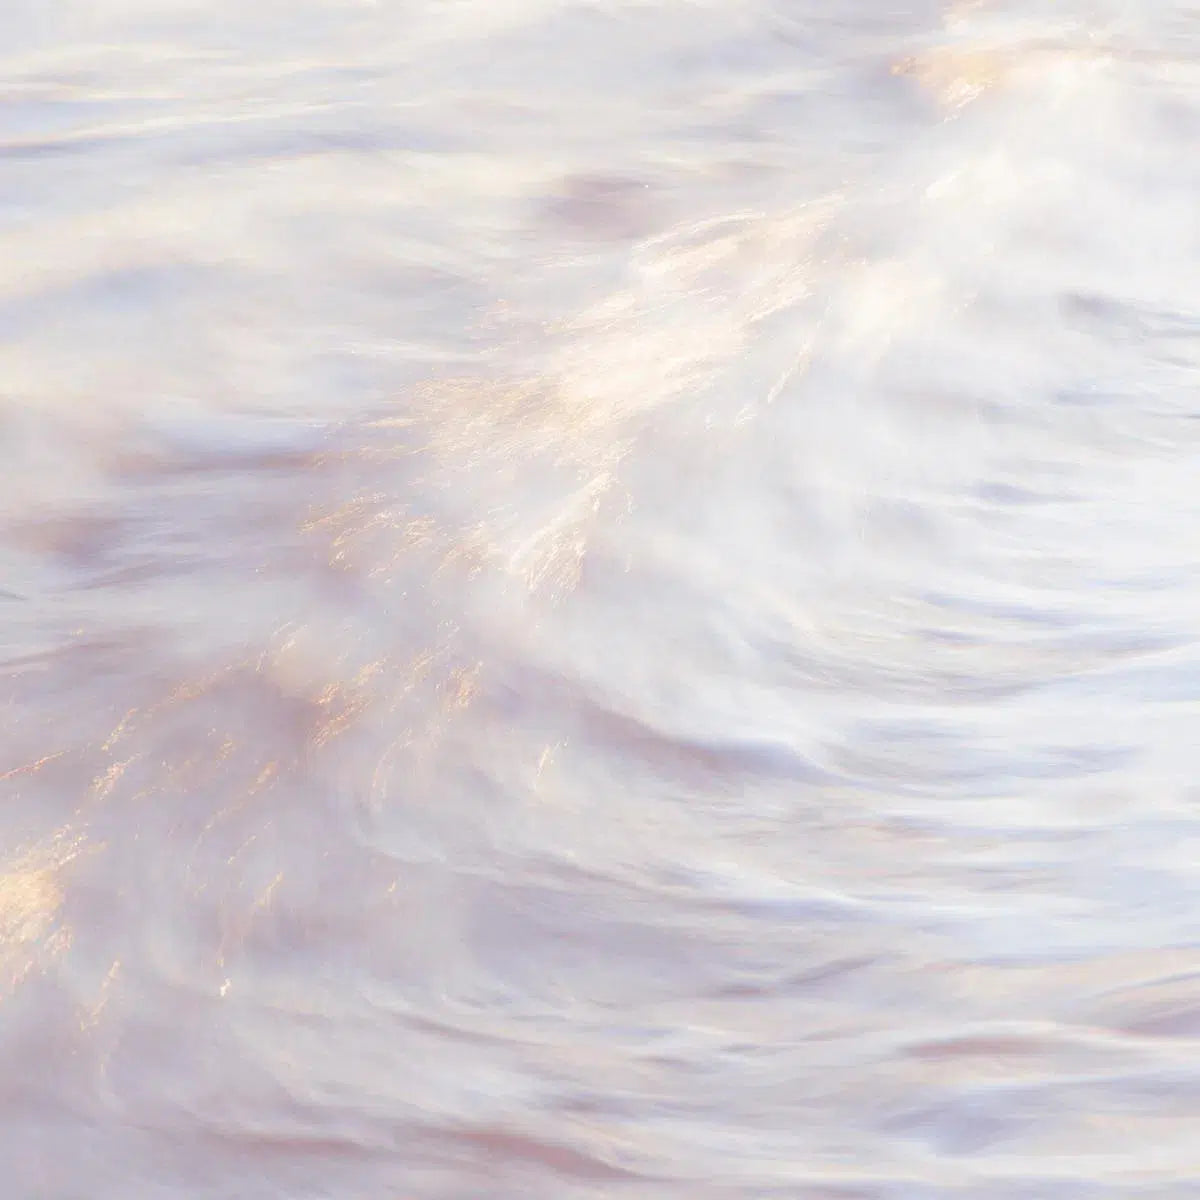 Sakynthos waves 3, by Mats Gustafsson-PurePhoto